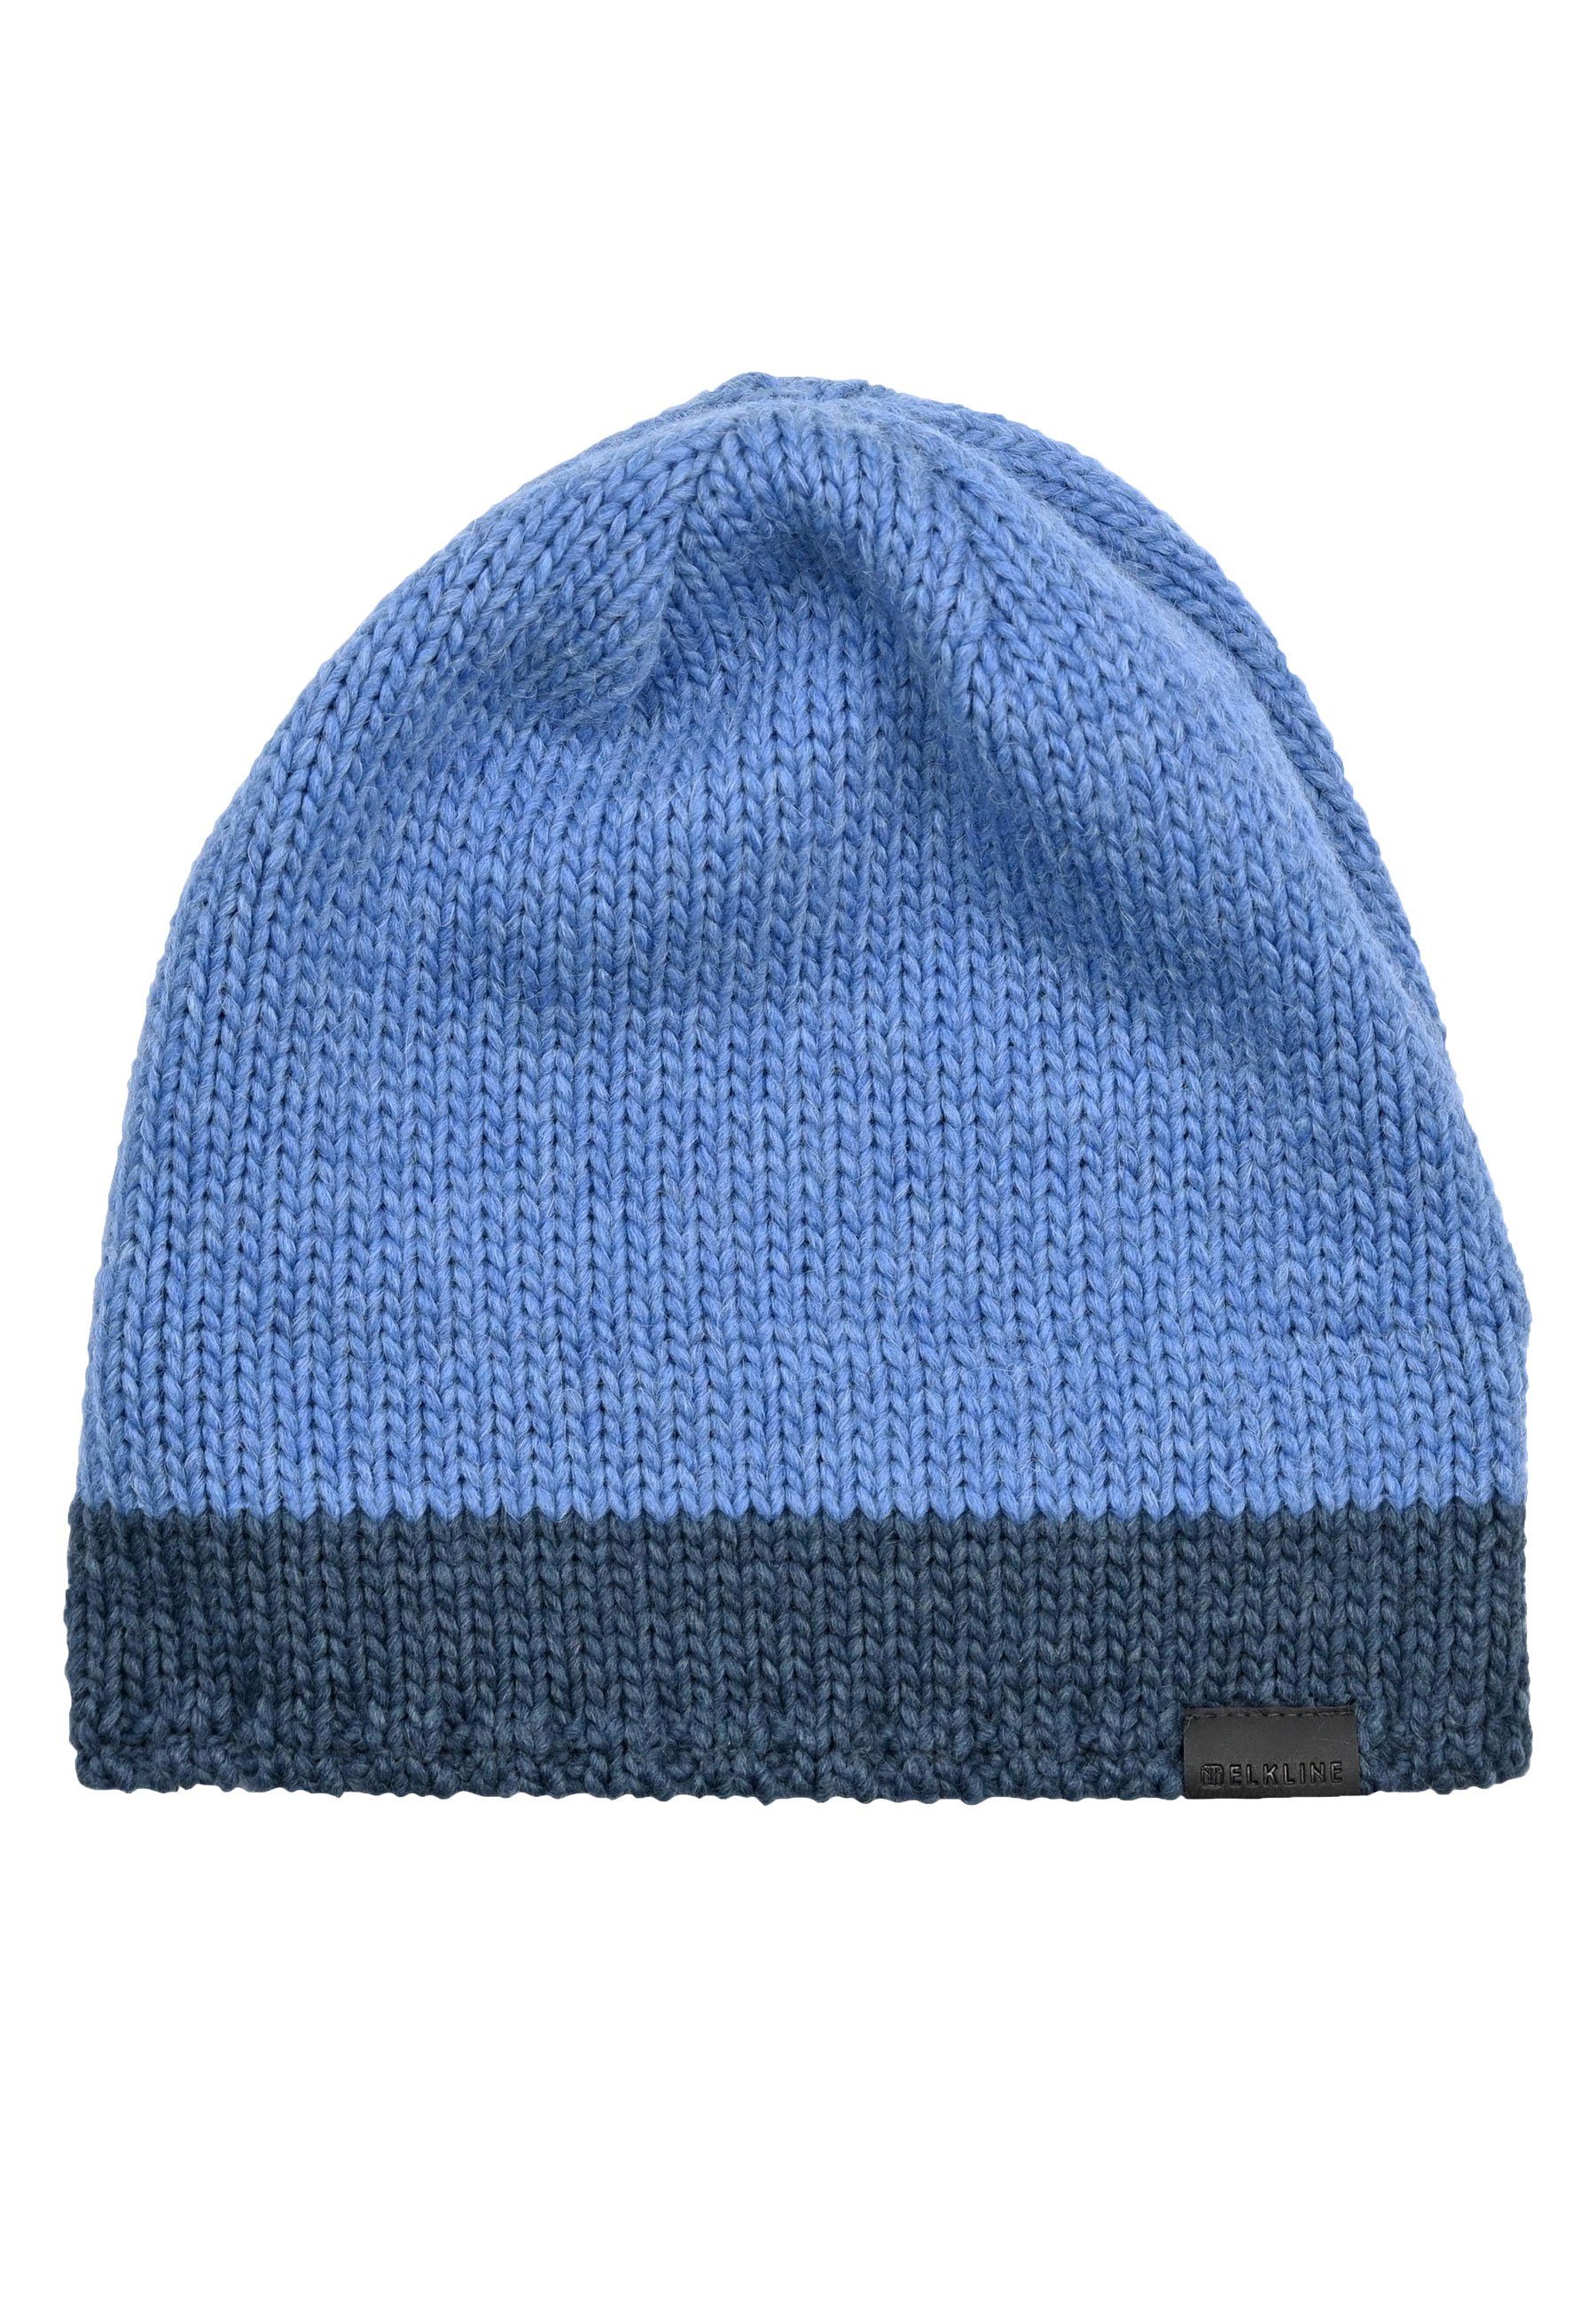 Elkline Strickmütze Hat Innenfleece denim blue Up - warmes